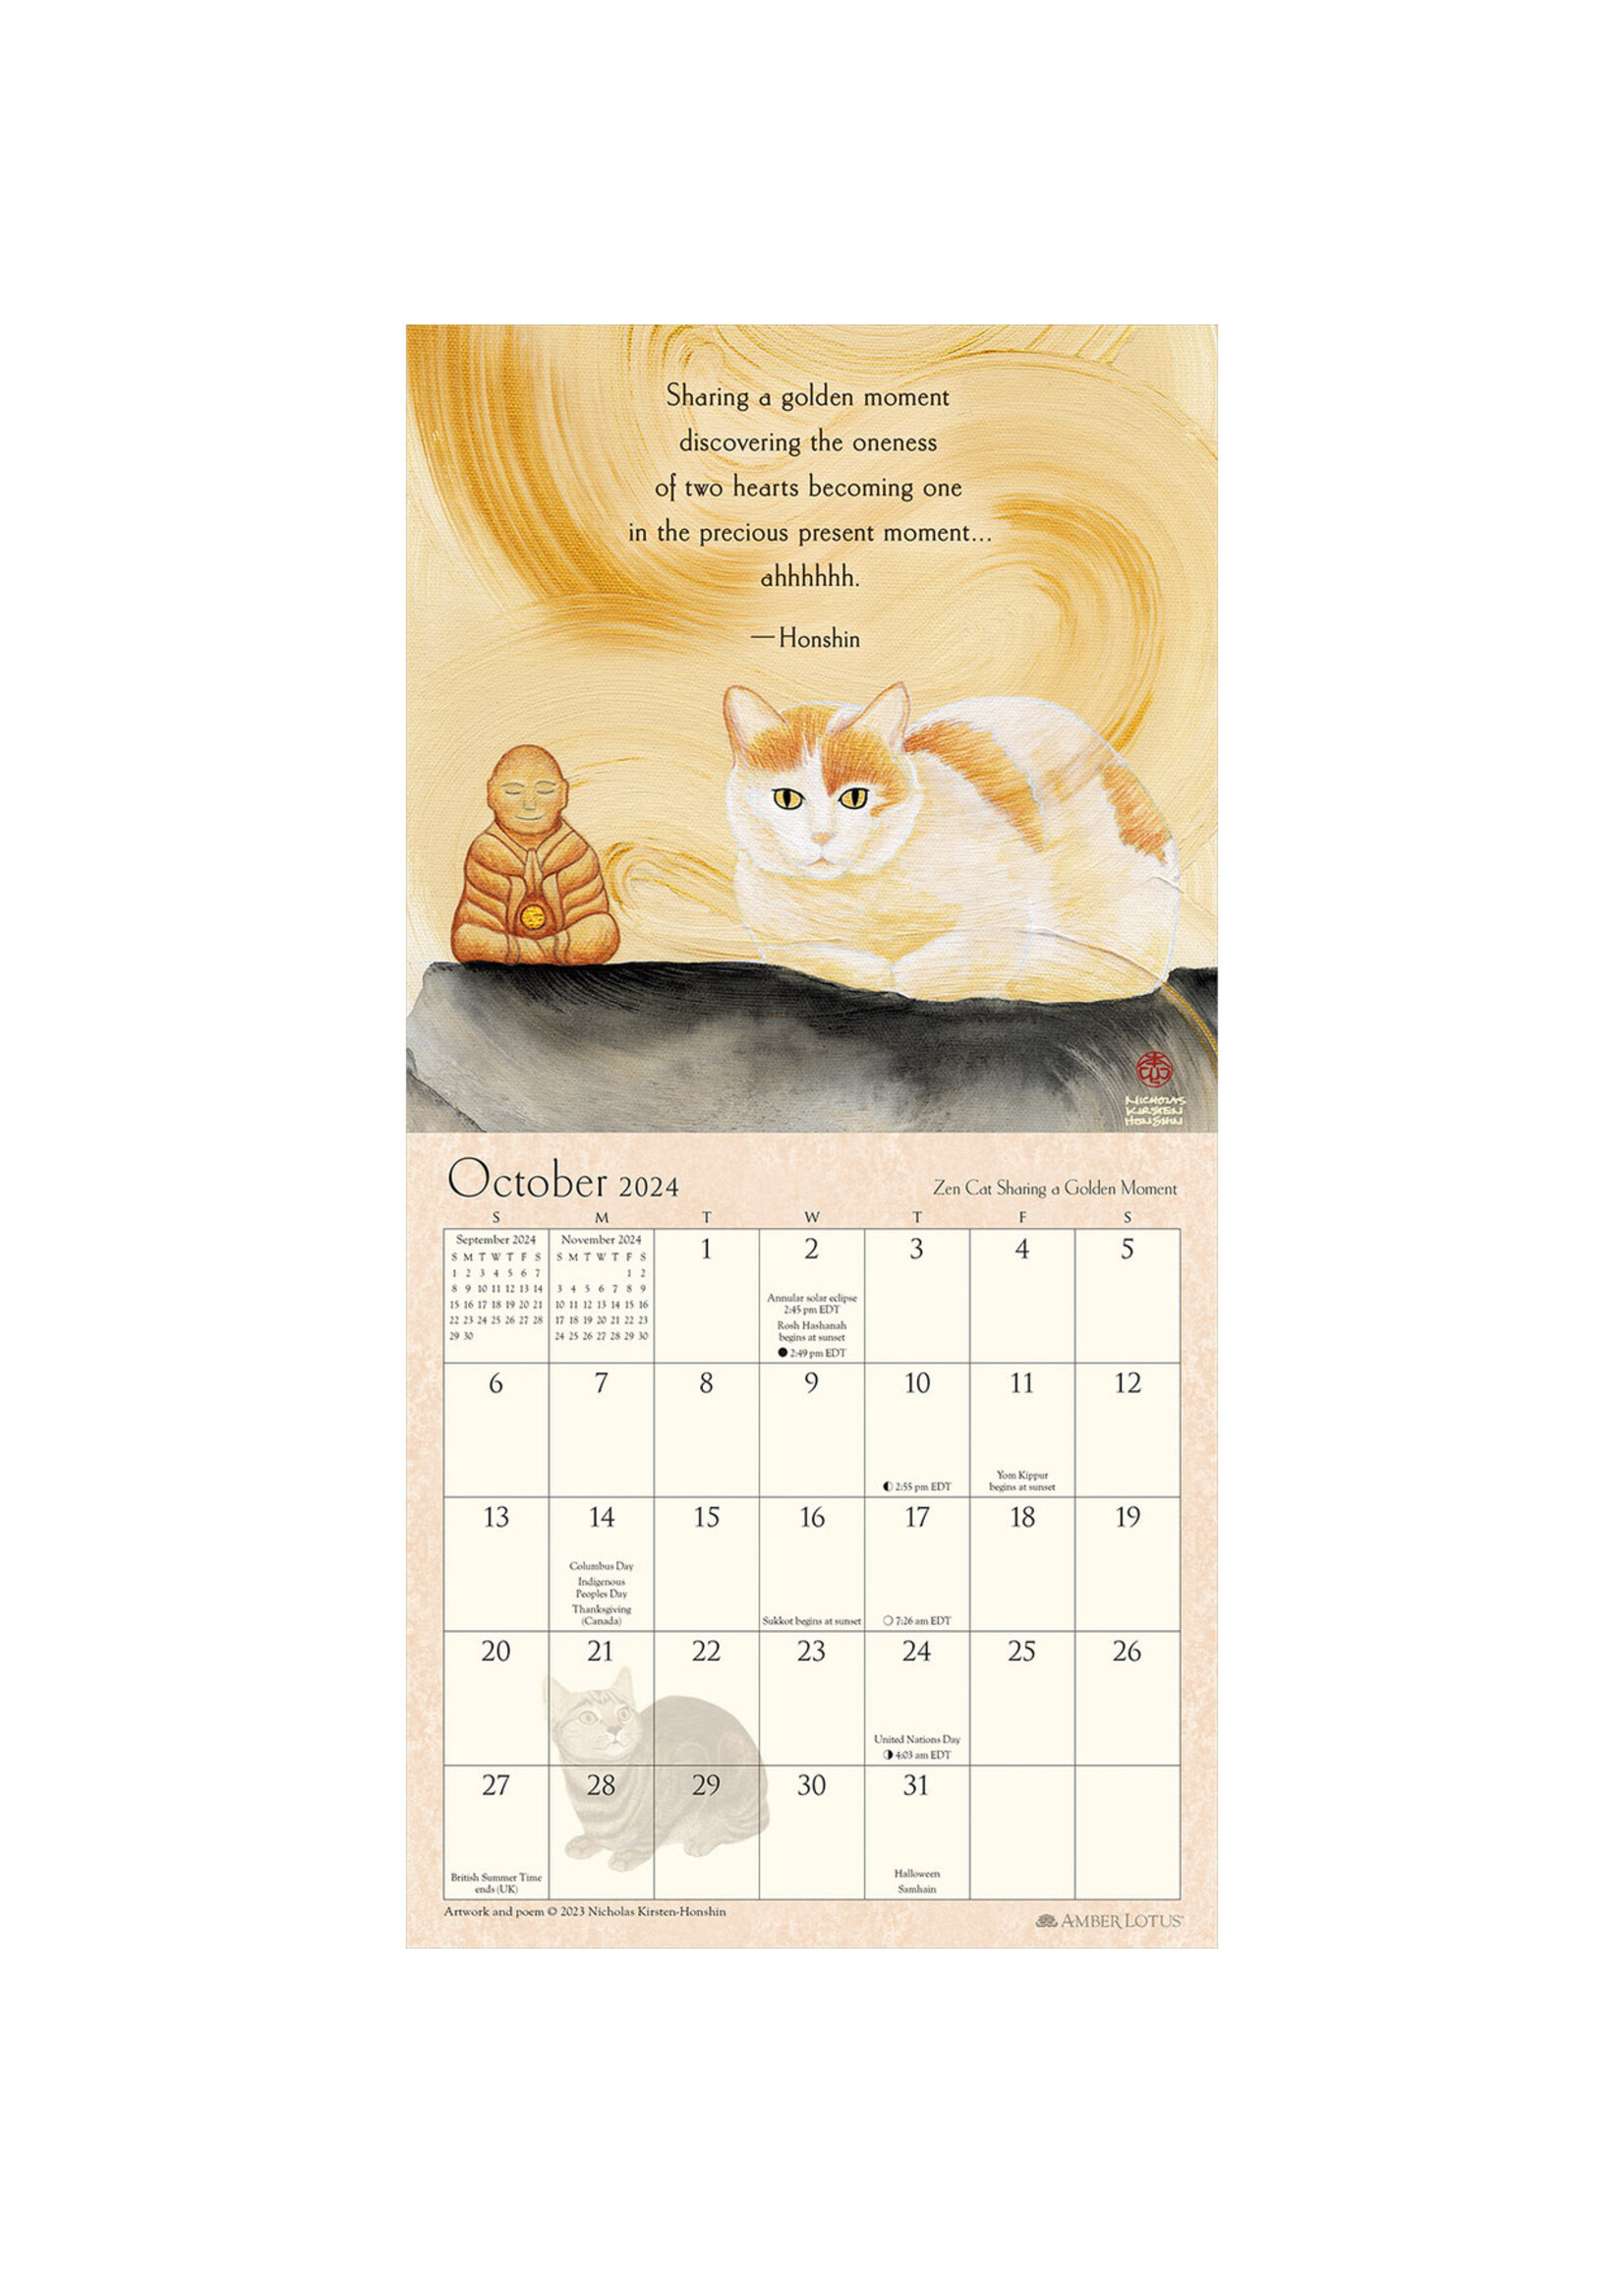 Cal 24 Mini Calendar Zen Cat